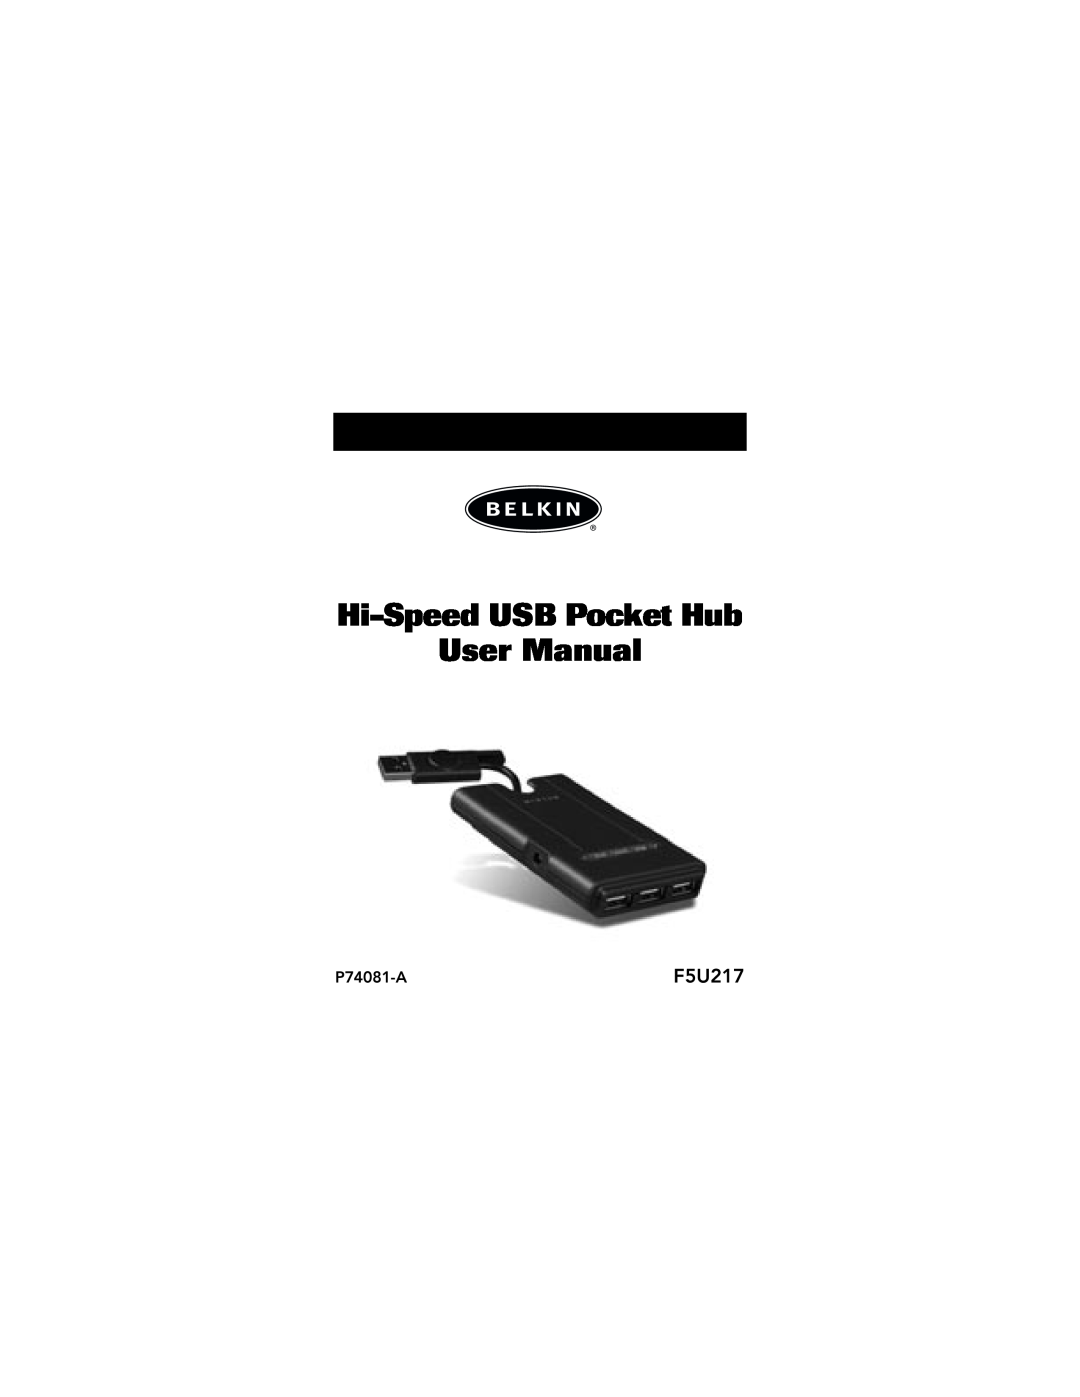 Belkin P74081-A, F5U217 user manual 